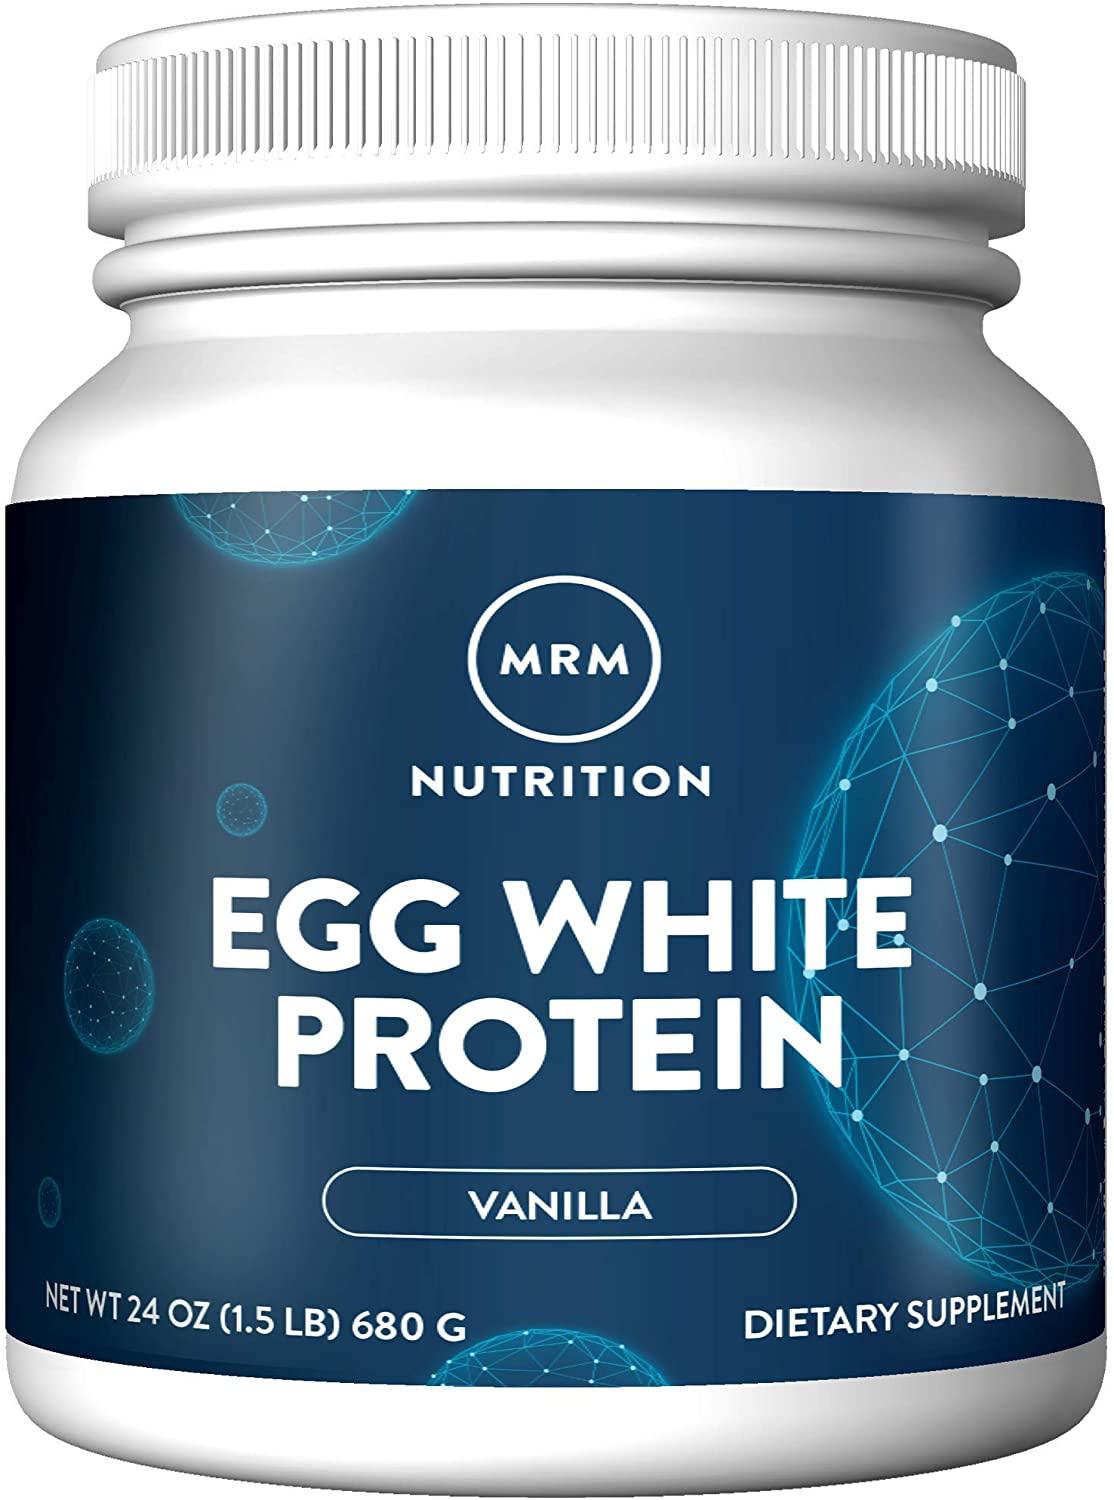 MRM Natural Egg White Protein Powder